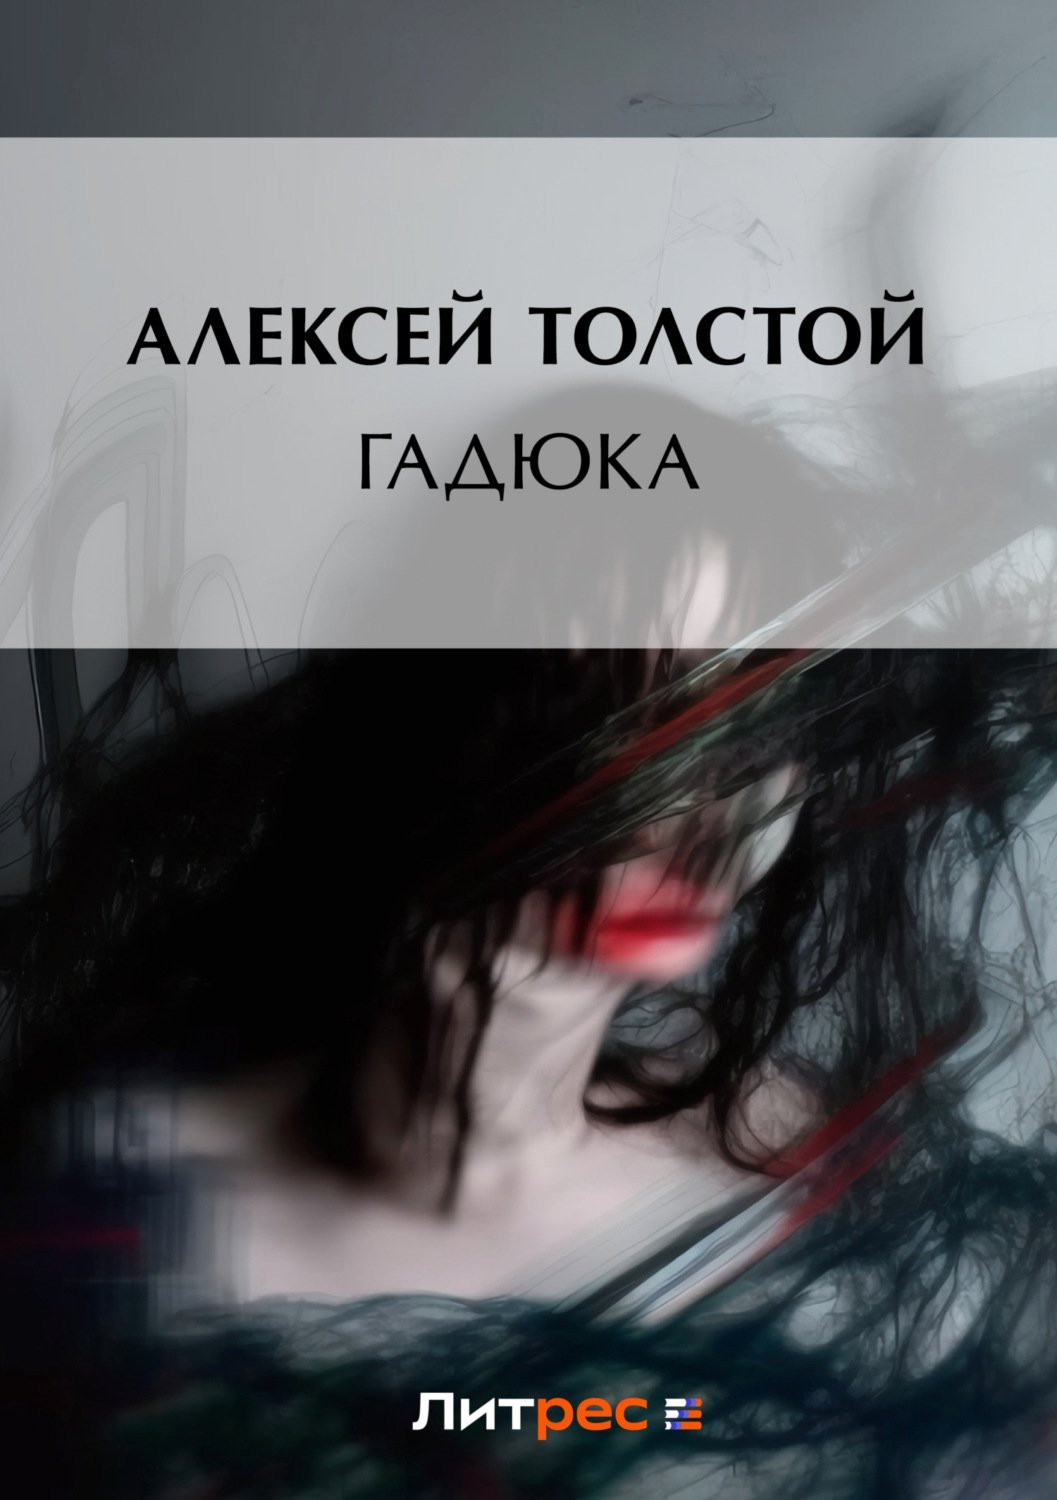 Толстой Алексей - обложка книги